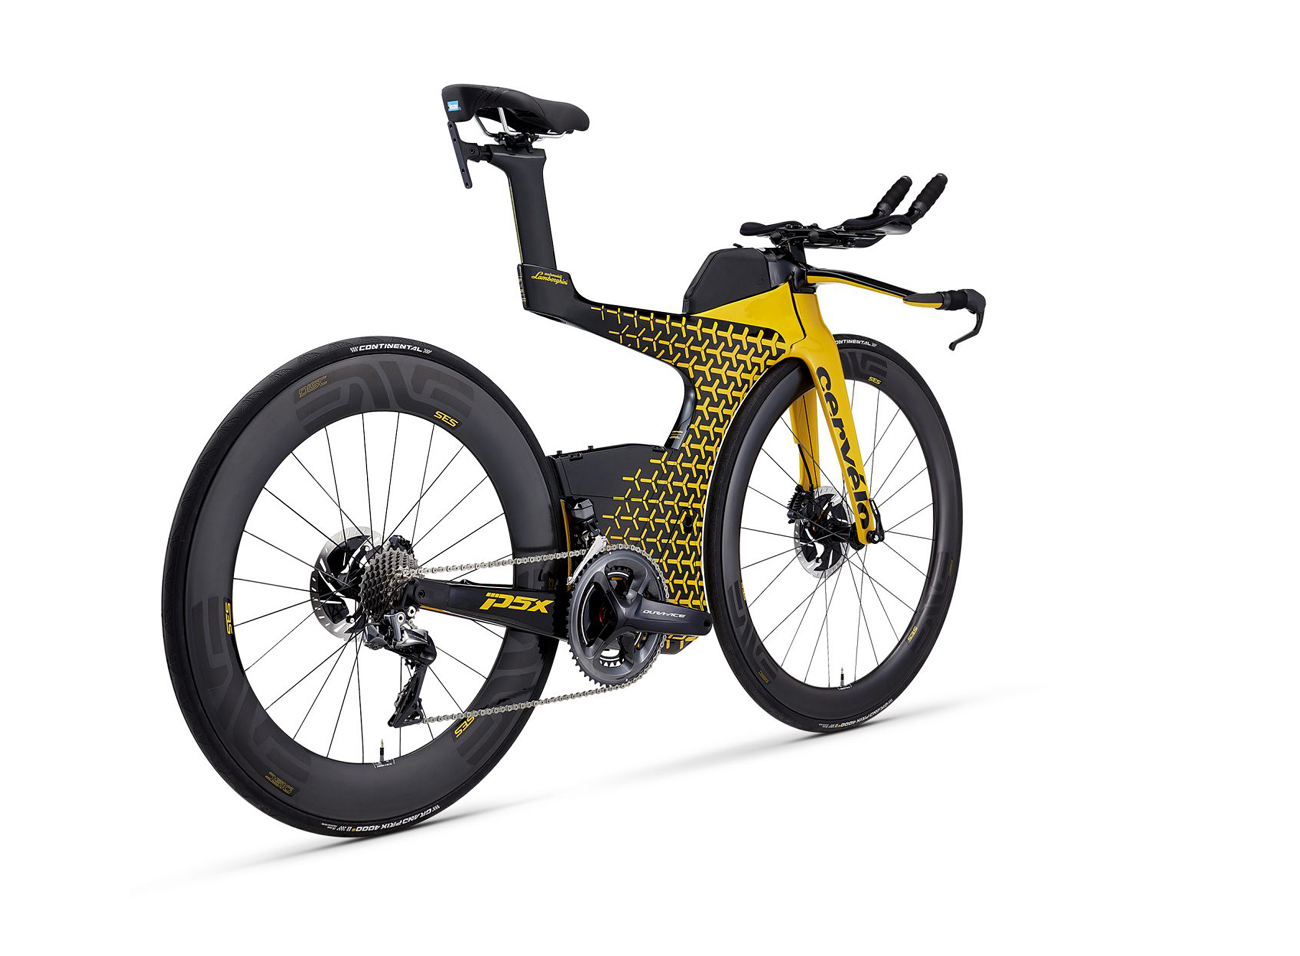 New Cervelo Triathlon Bike ‘PX5 Lamborghini Edition’